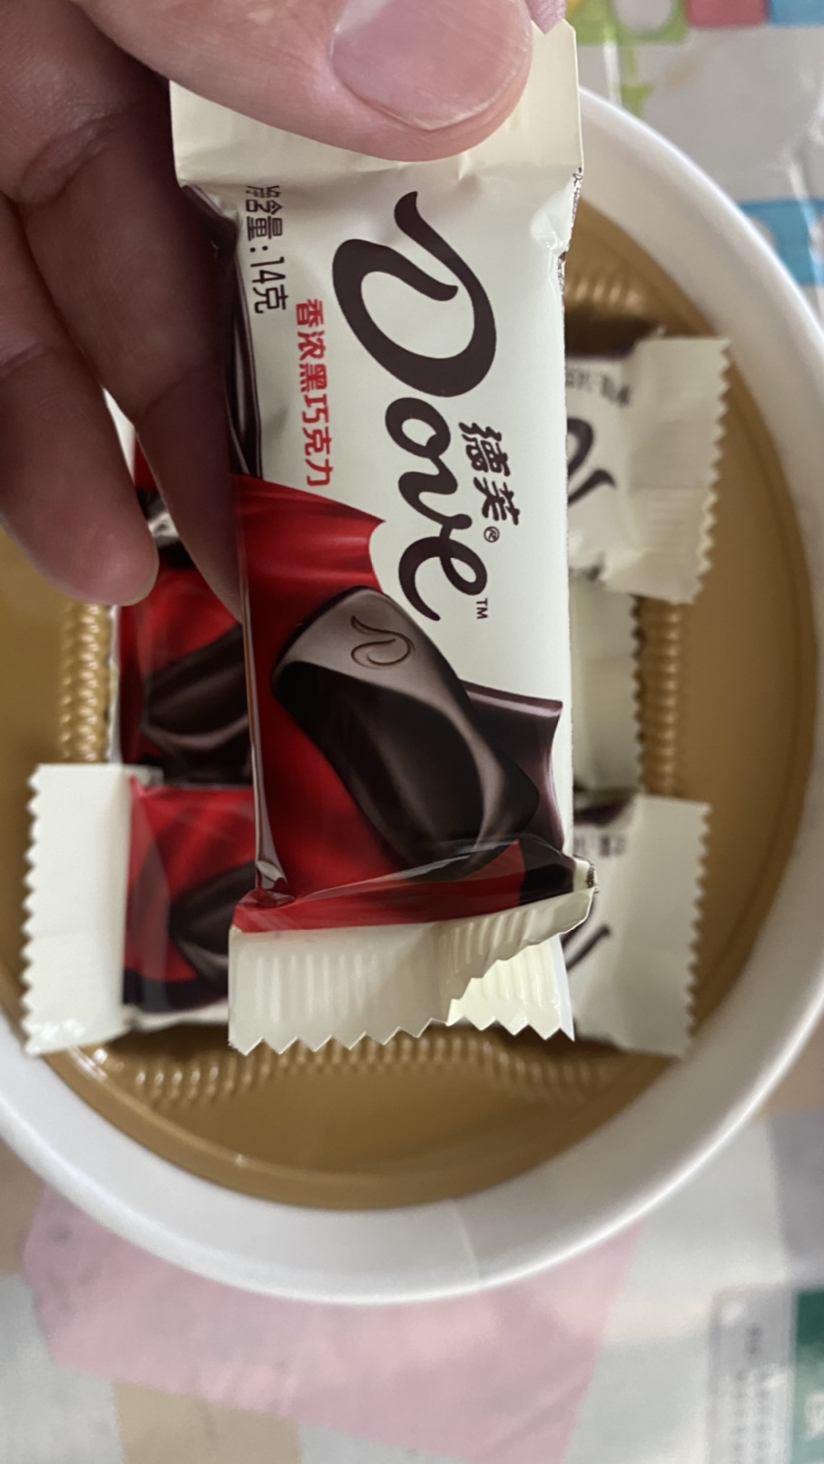 德芙巧克力碗装桶装喜糖糖果年货休闲零食小吃礼物批发(浓香黑巧克力)晒单图